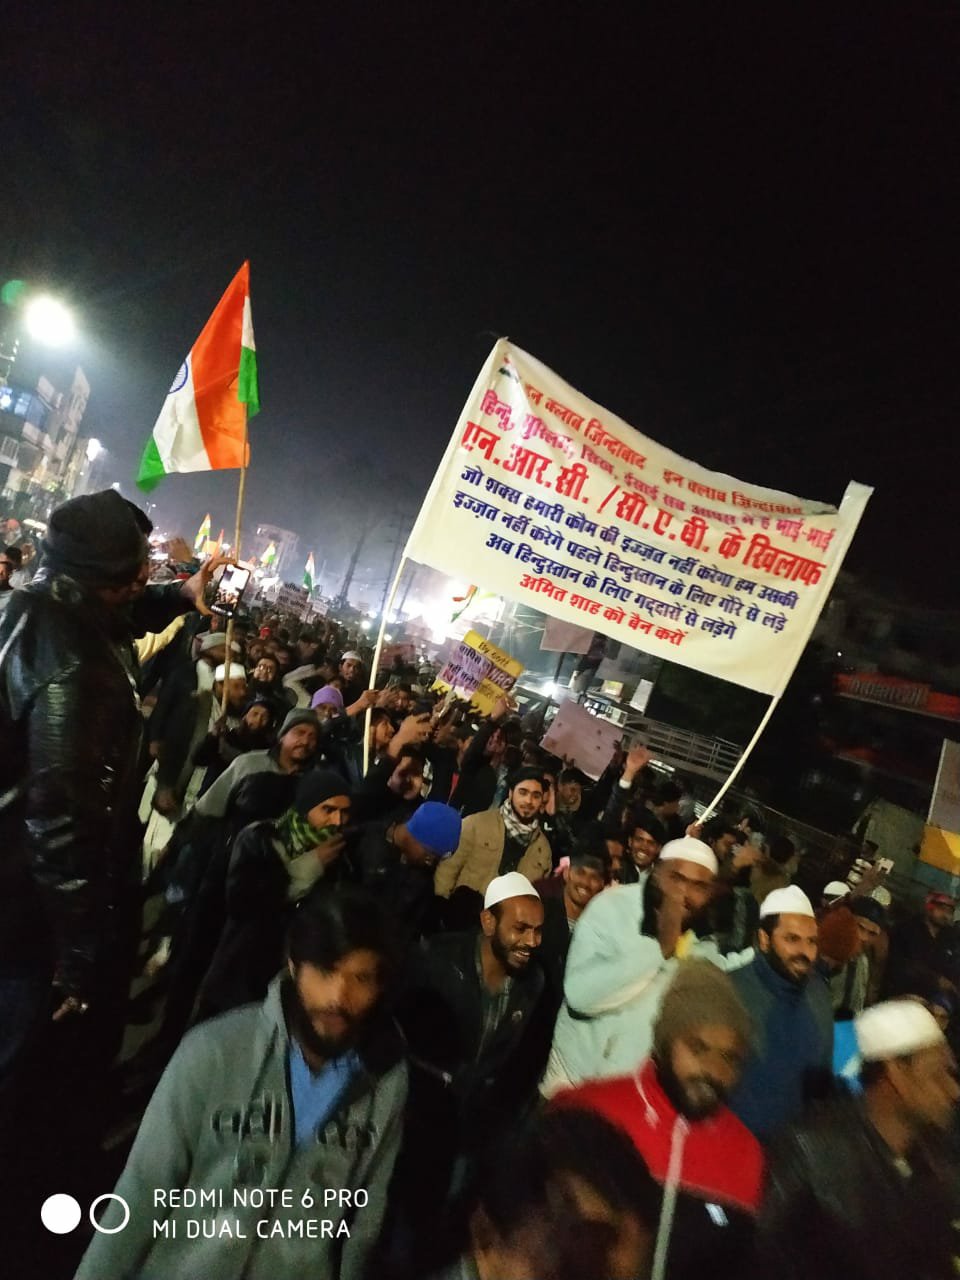 एनआरसी एवं सीएए कानून के खिलाफ भोपाल में उमड़ा जन सैलाब, शांतिपूर्वक निकाली गई रैली | New India Times